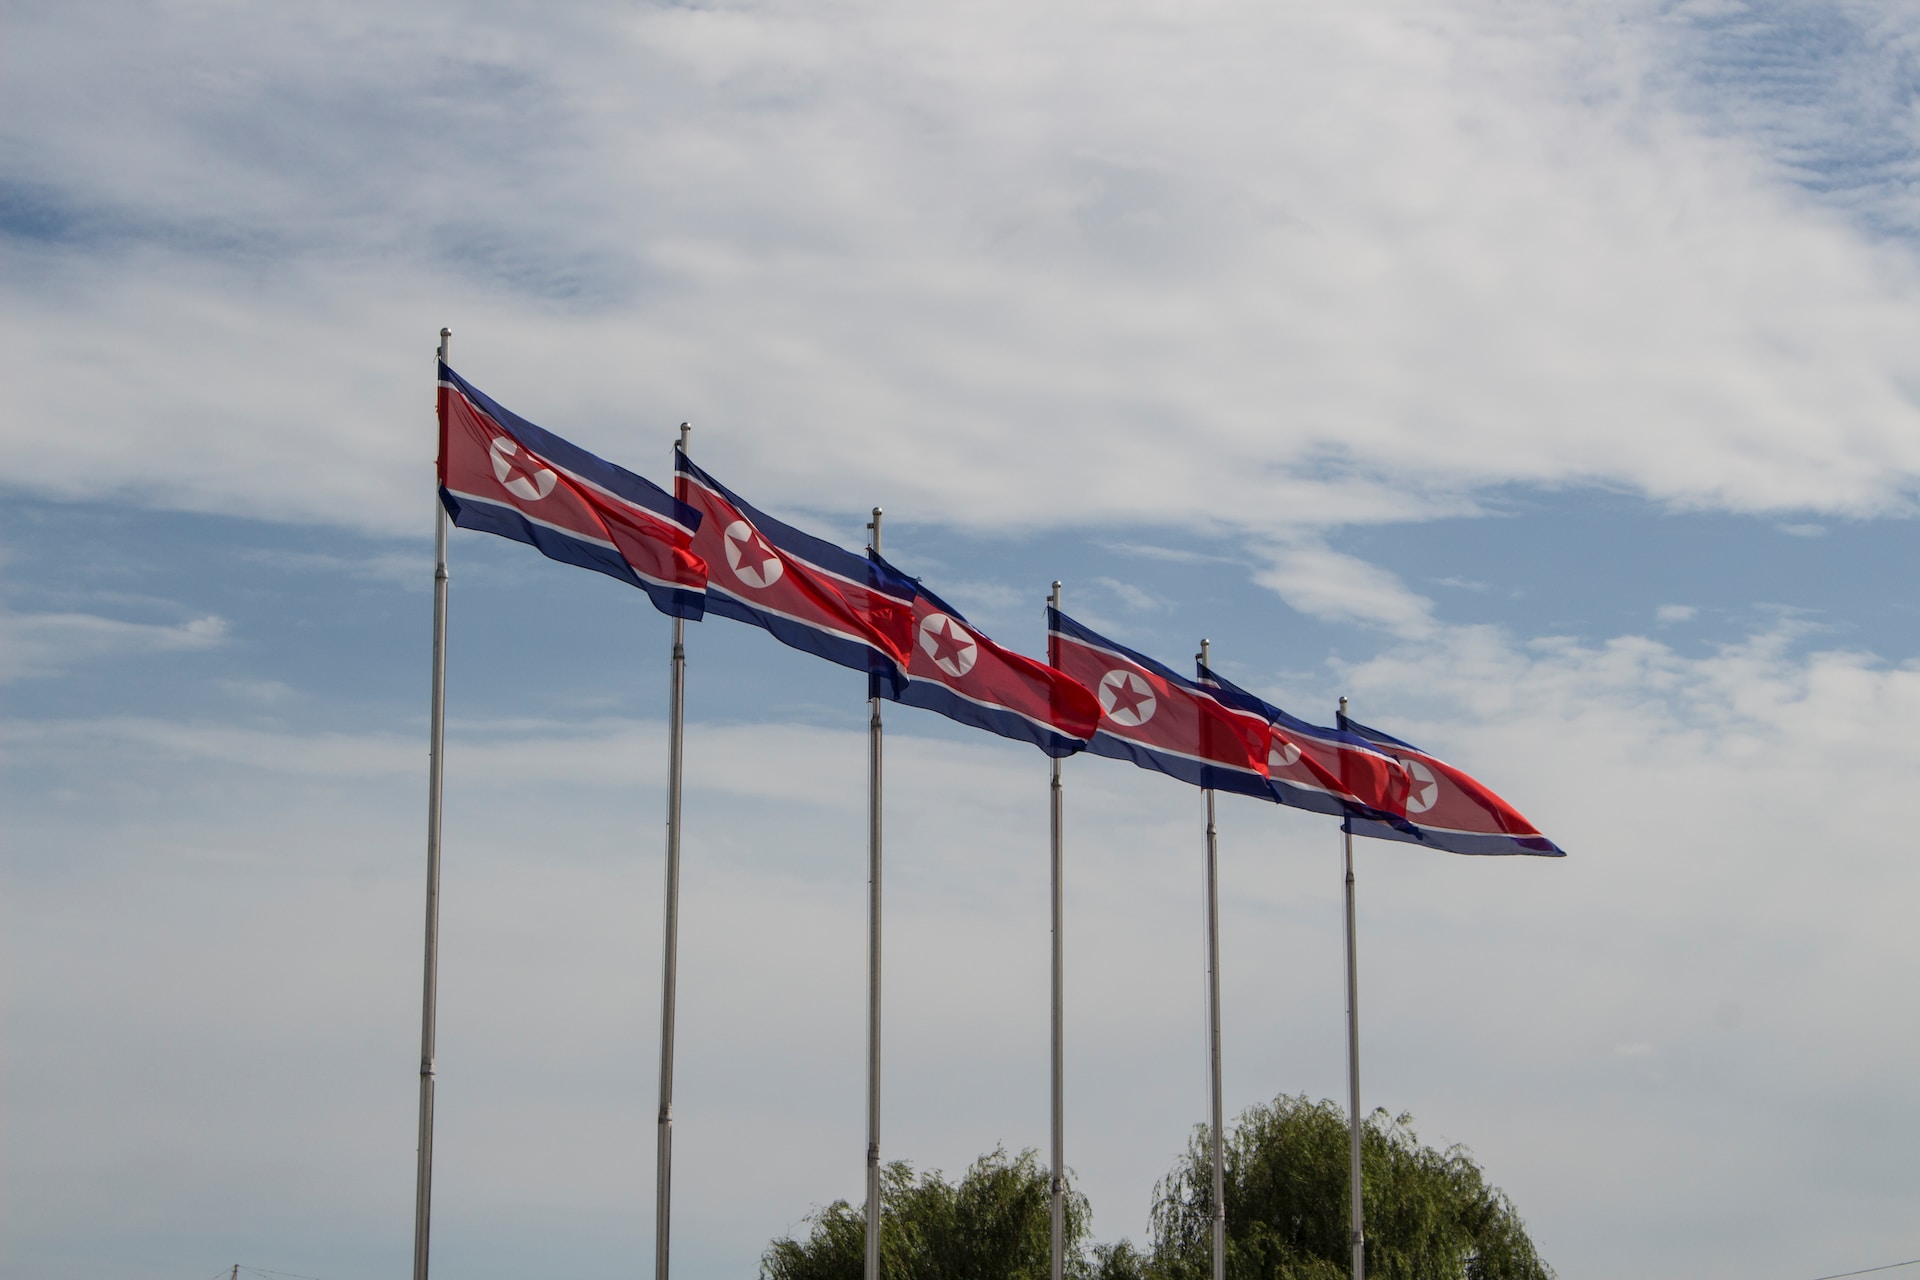 Пхеньян второй день подряд не отвечает на звонки Сеула по межкорейским линиям связи